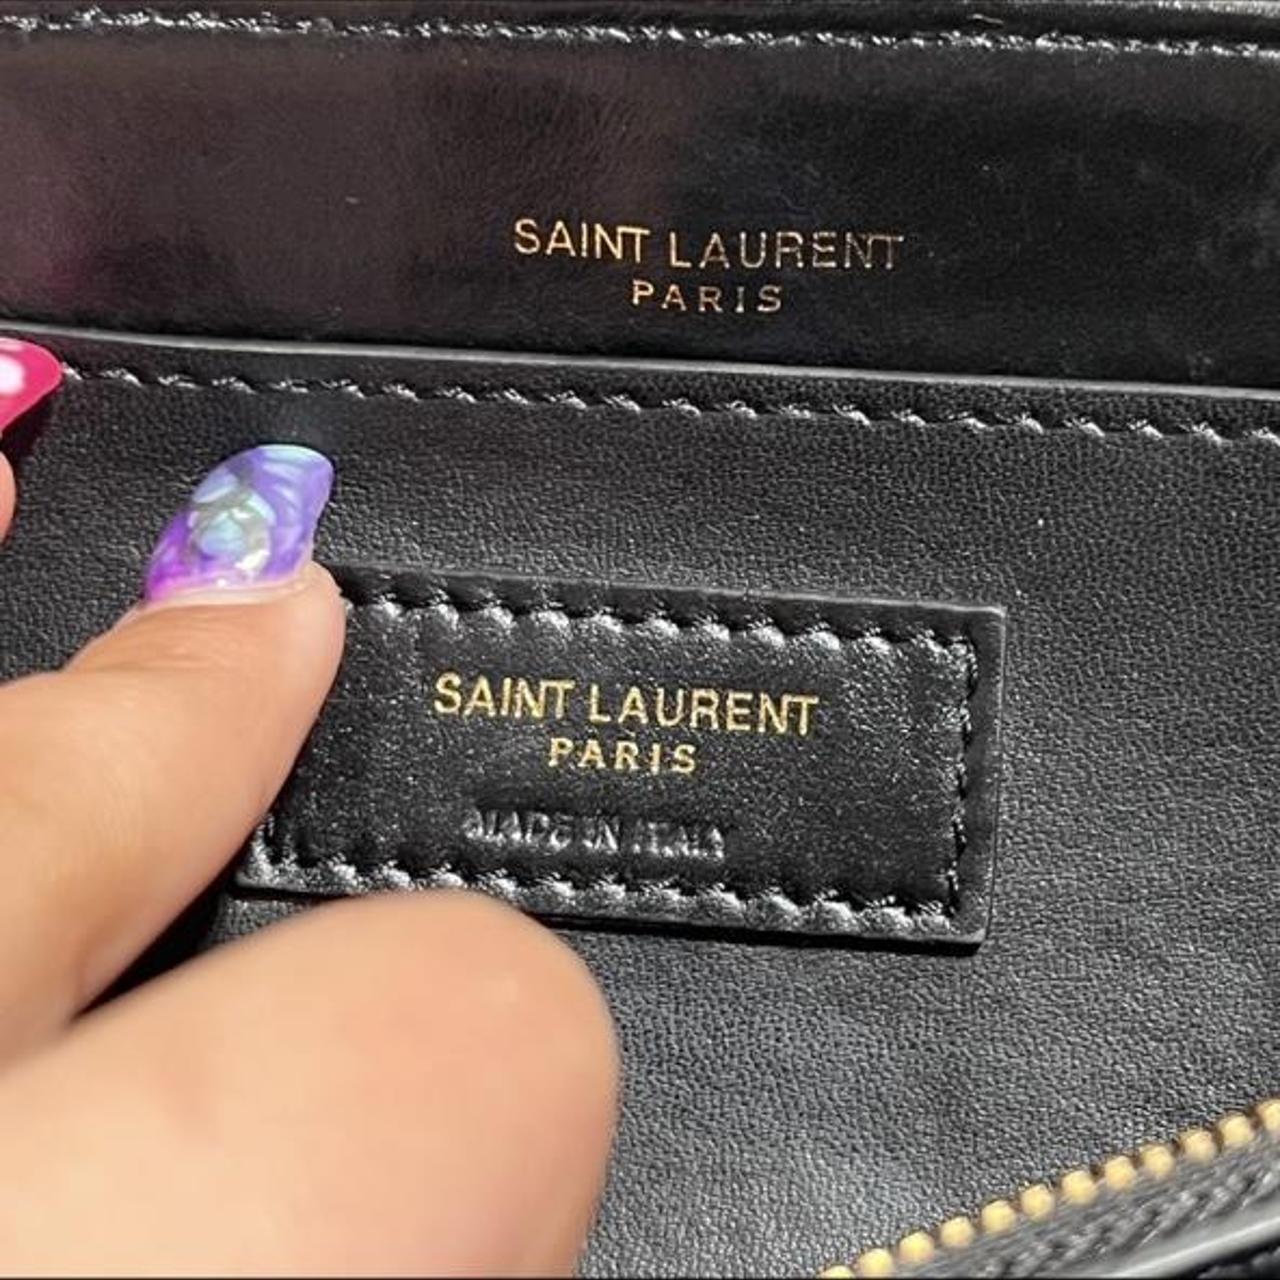 Yves Saint Laurent YSL Toy Loulou Shoulder Bag - Depop